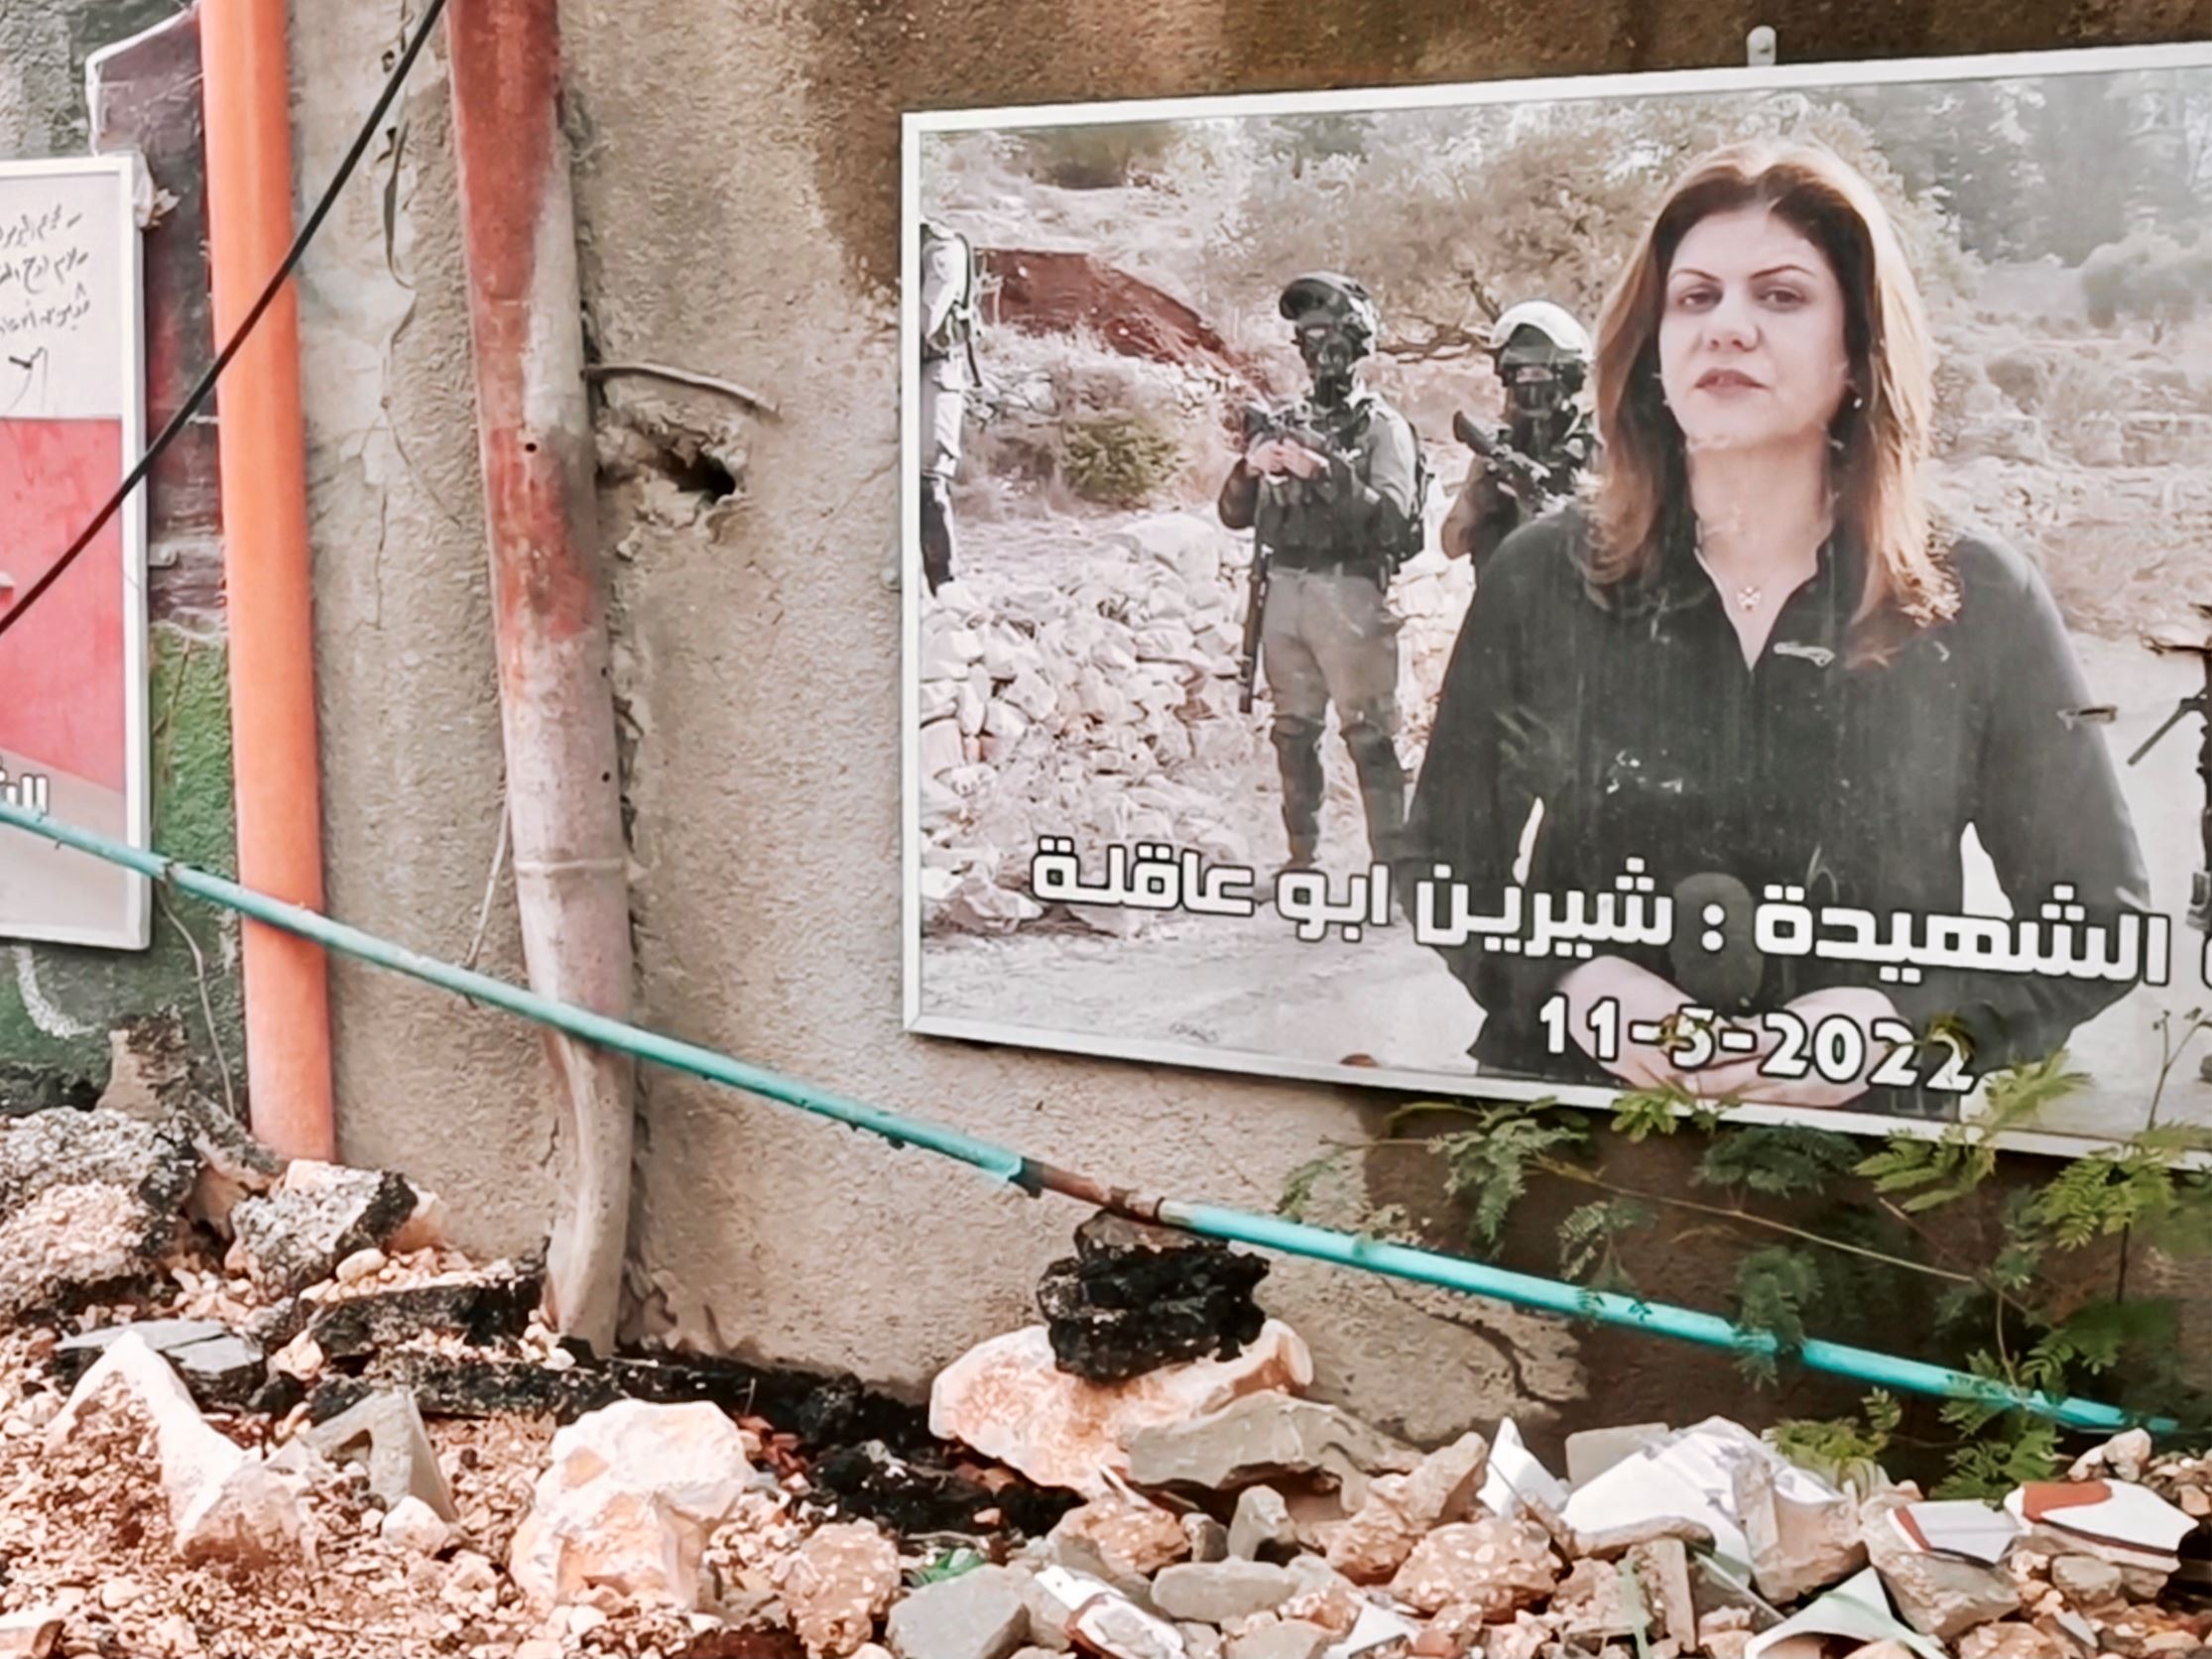 Le incursioni dell’esercito israeliano hanno distrutto anche il luogo-monumento in cui un anno fa venne uccisa Shireen Abu Akleh, la giornalista palestinese e cristiana di al-Jazeera